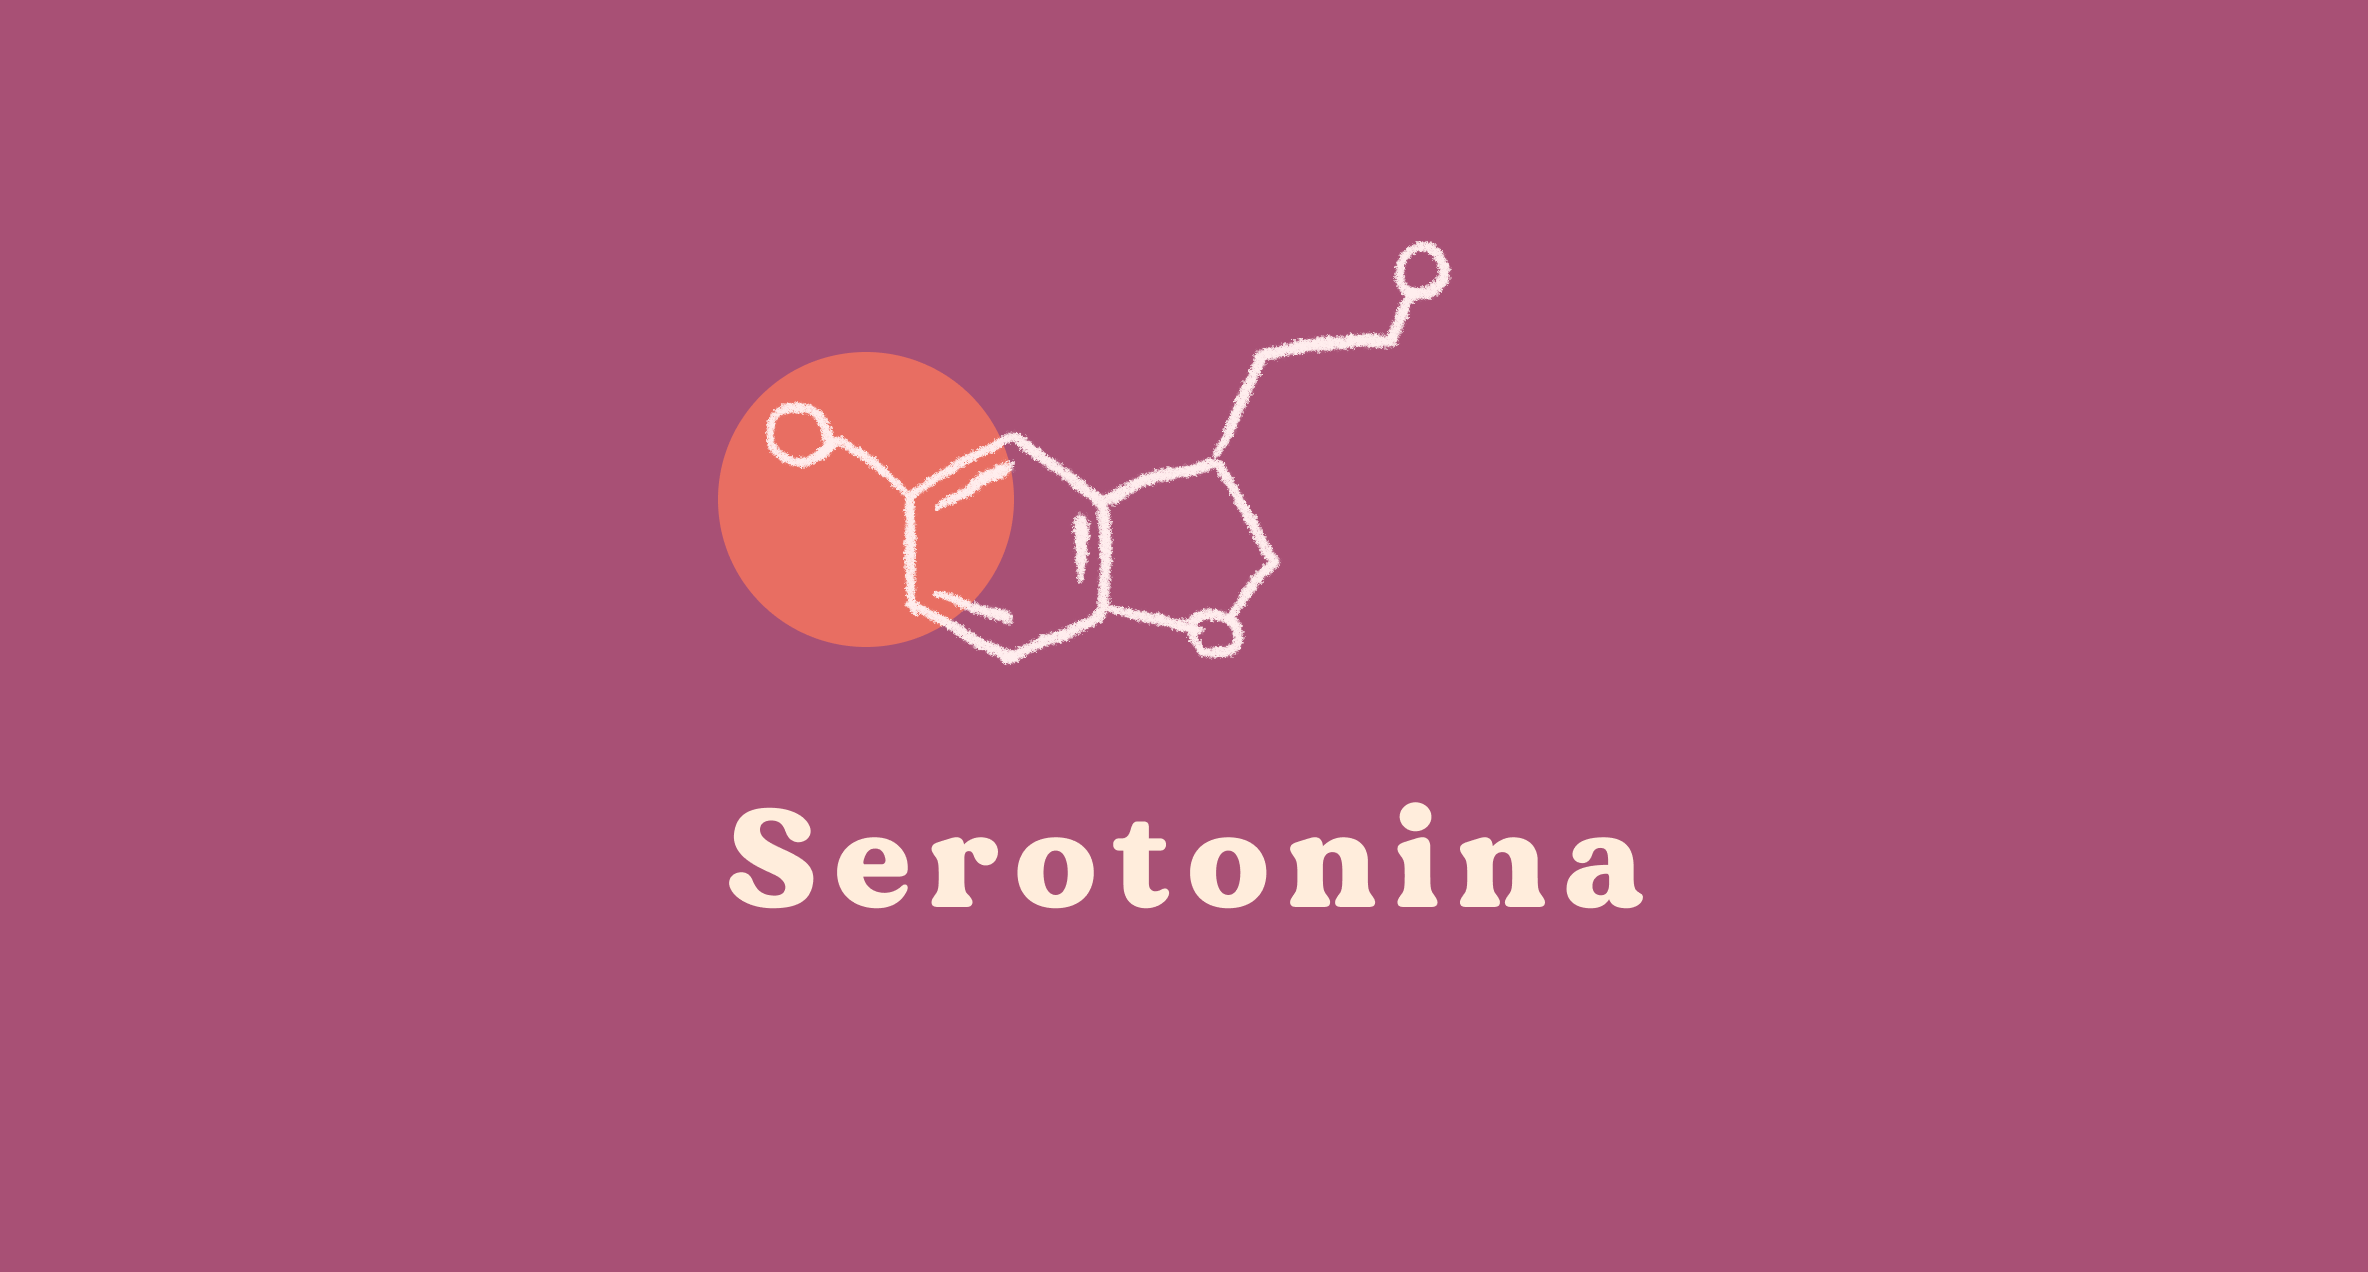 Seratonina